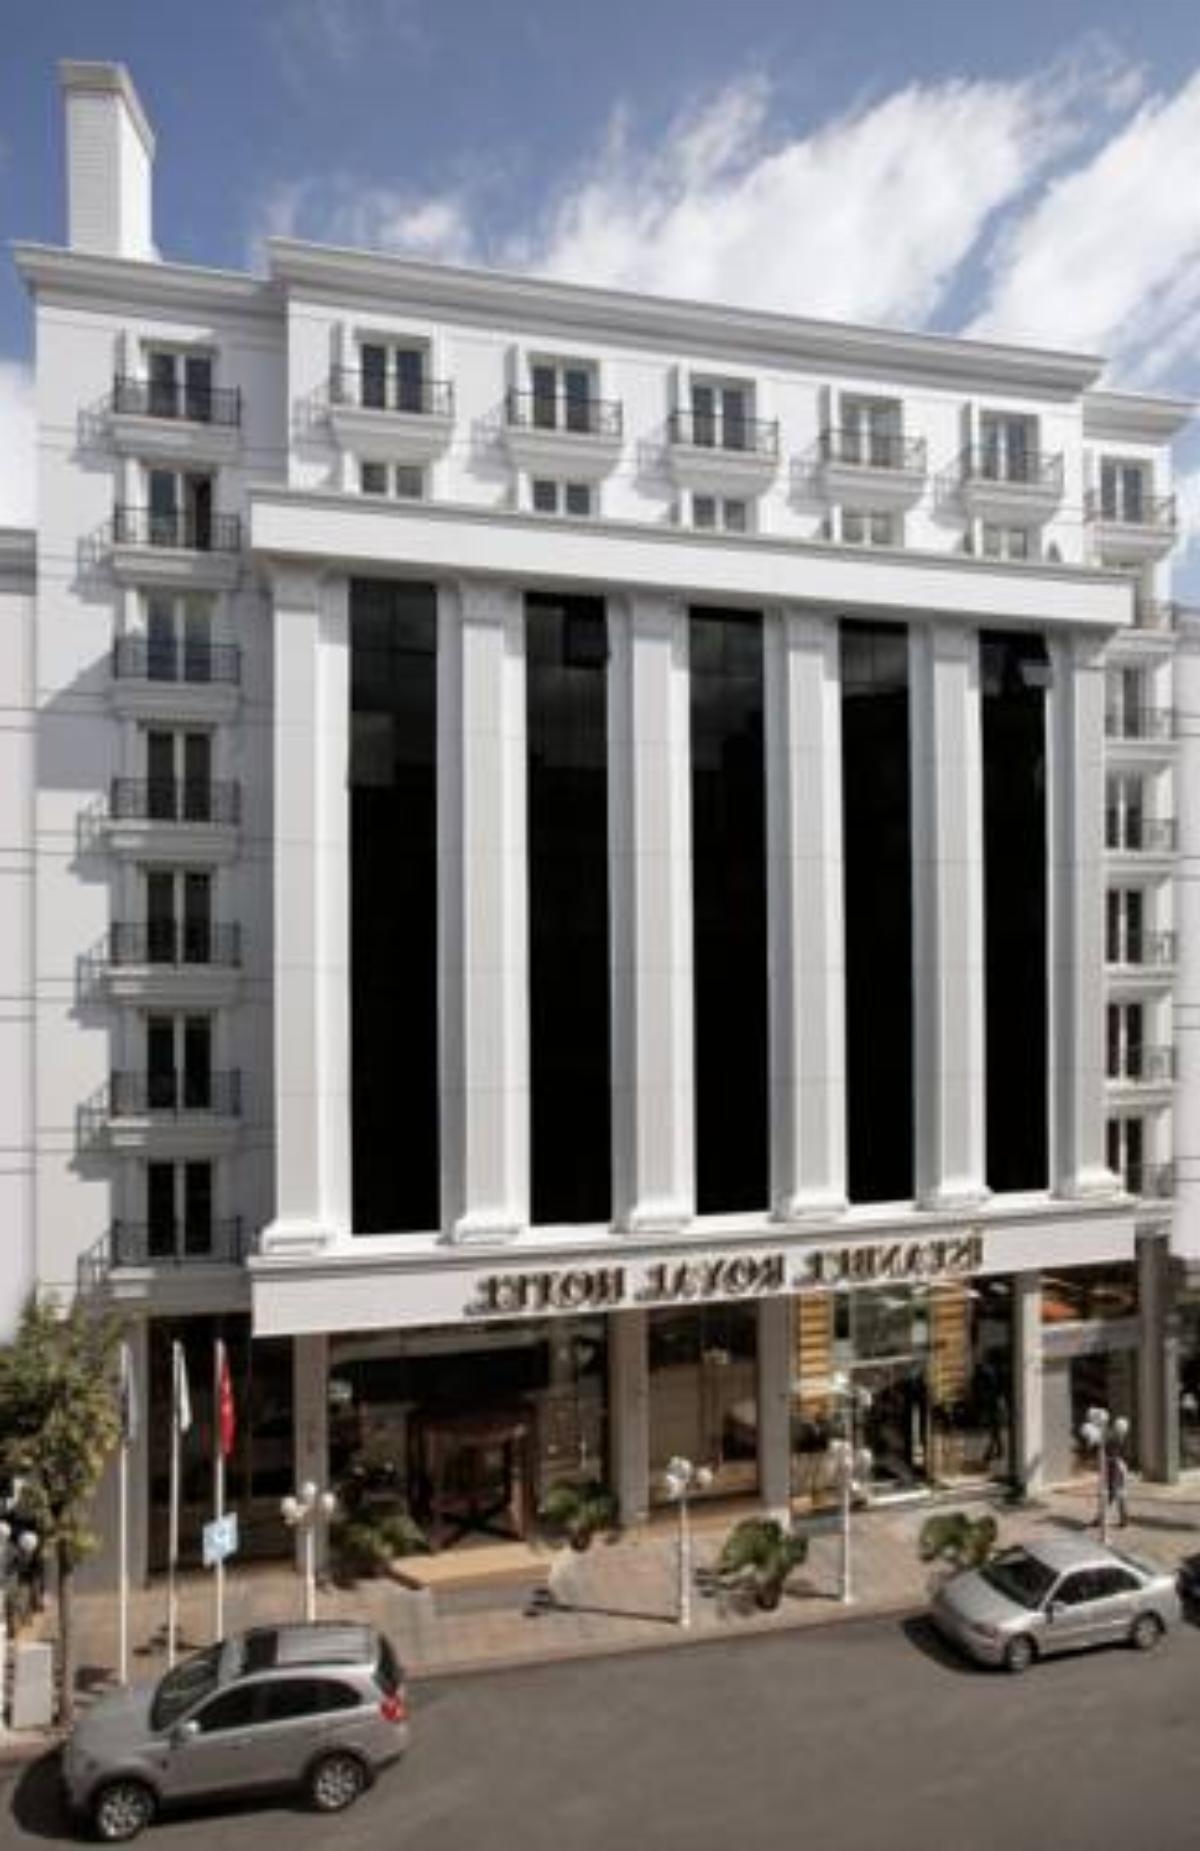 Istanbul Royal Hotel Hotel İstanbul Turkey